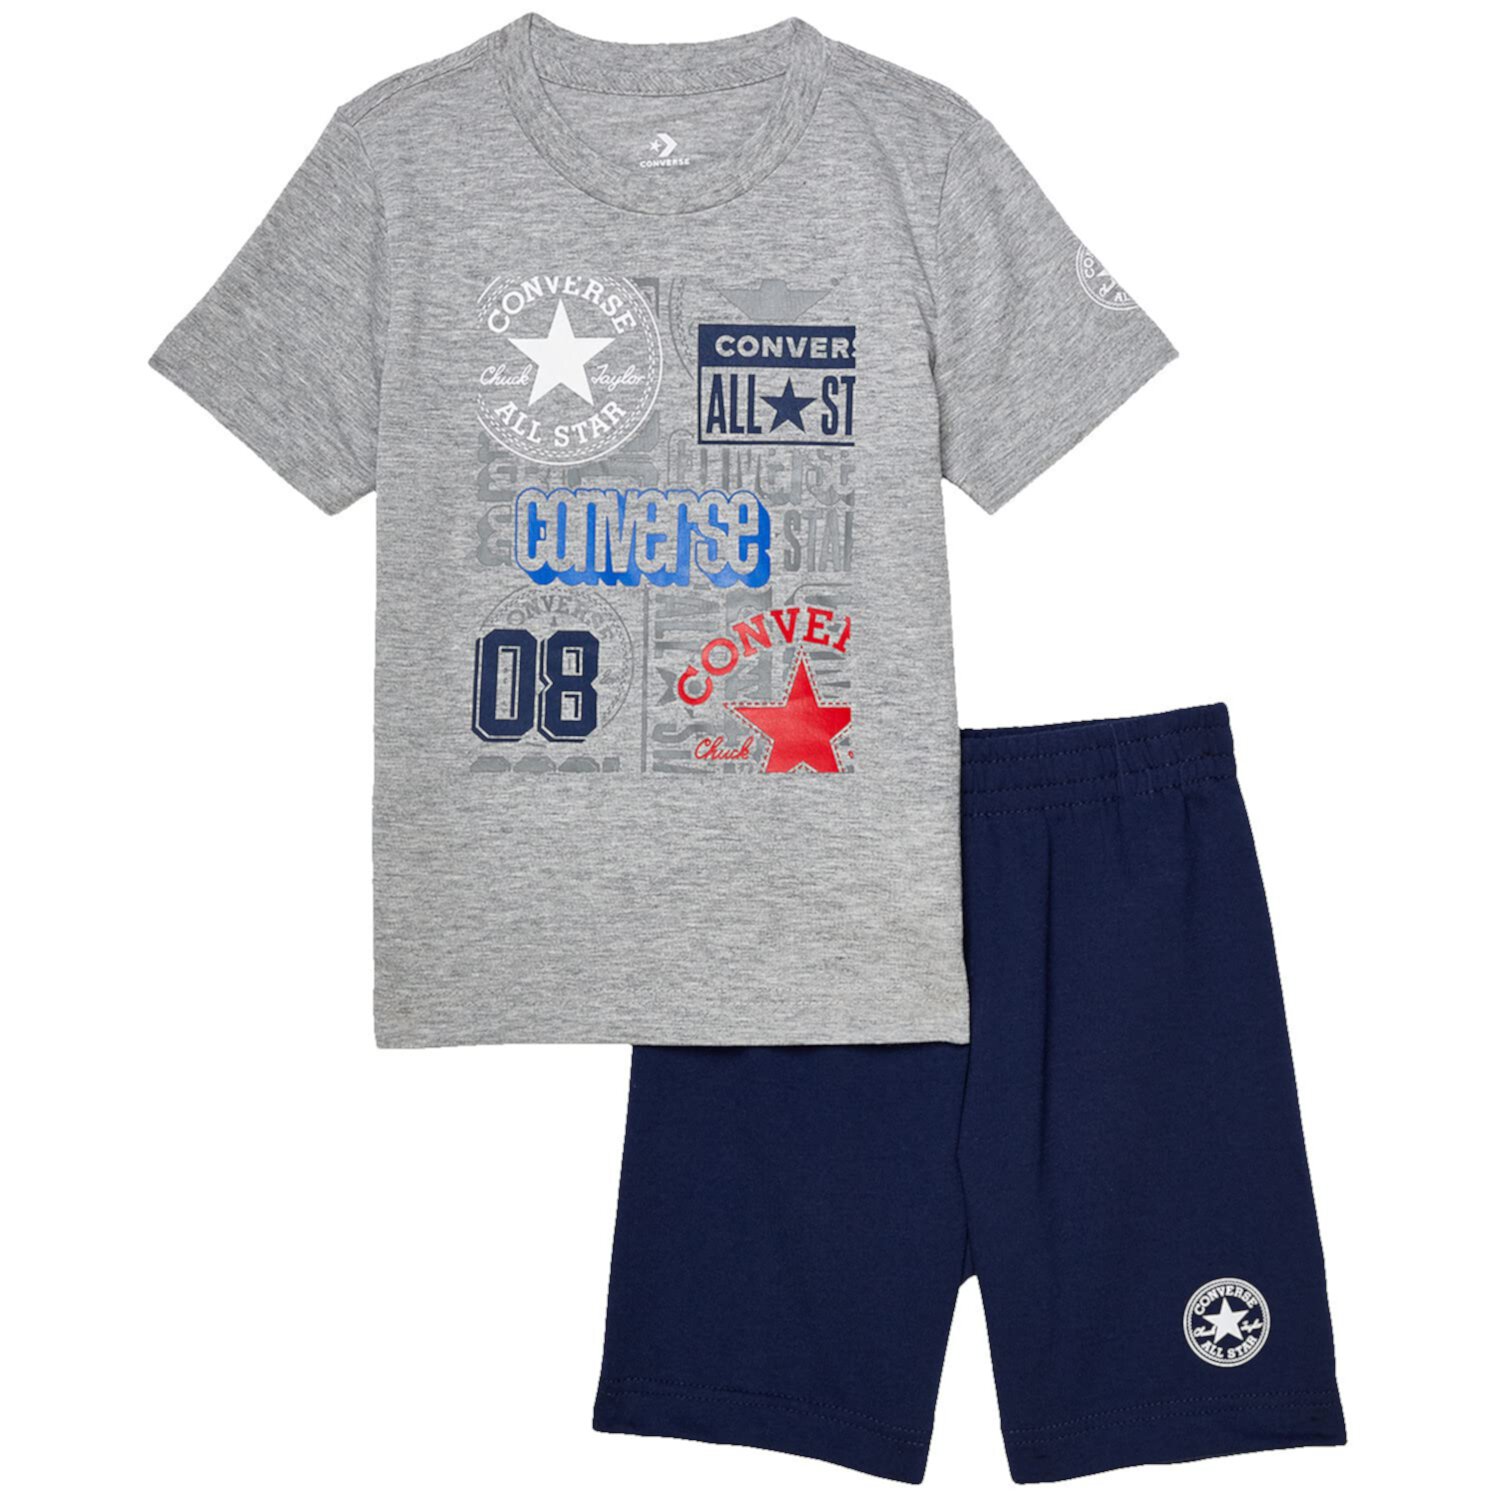 Комплект футболка и шорты с логотипом Converse Kids для малышей и детей постарше Converse Kids